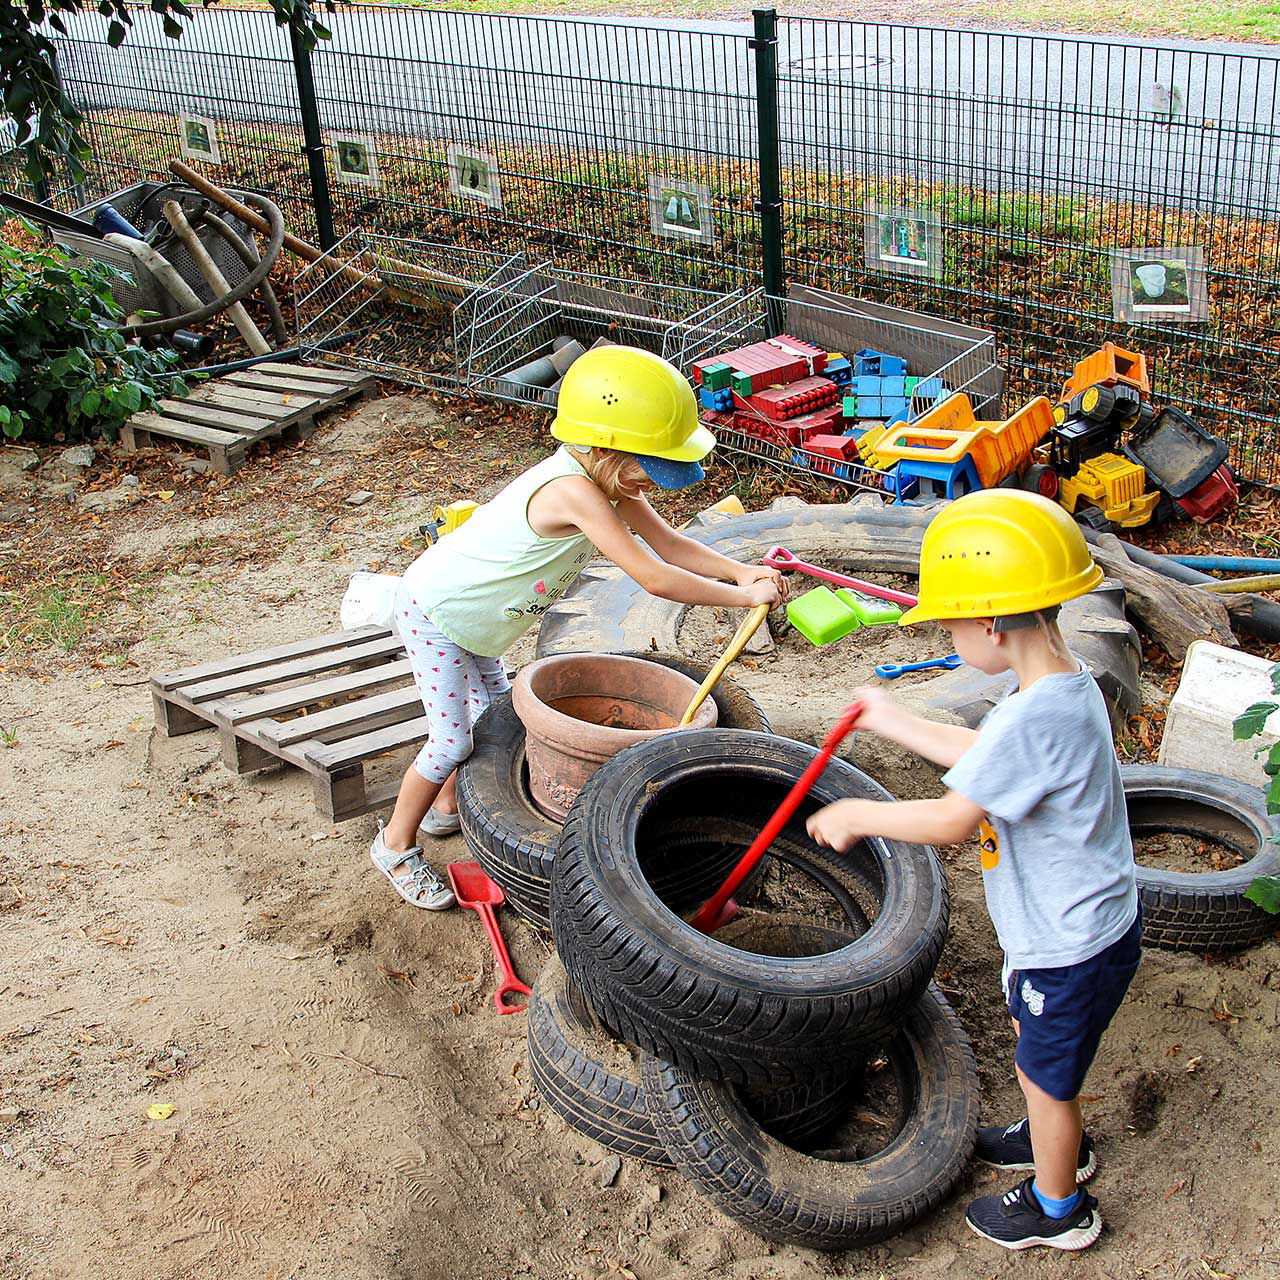 In der Kinderbaustelle spielen zwei Kinder mit alten Reifen, Schaufeln und verschiedensten Baumaterialien.